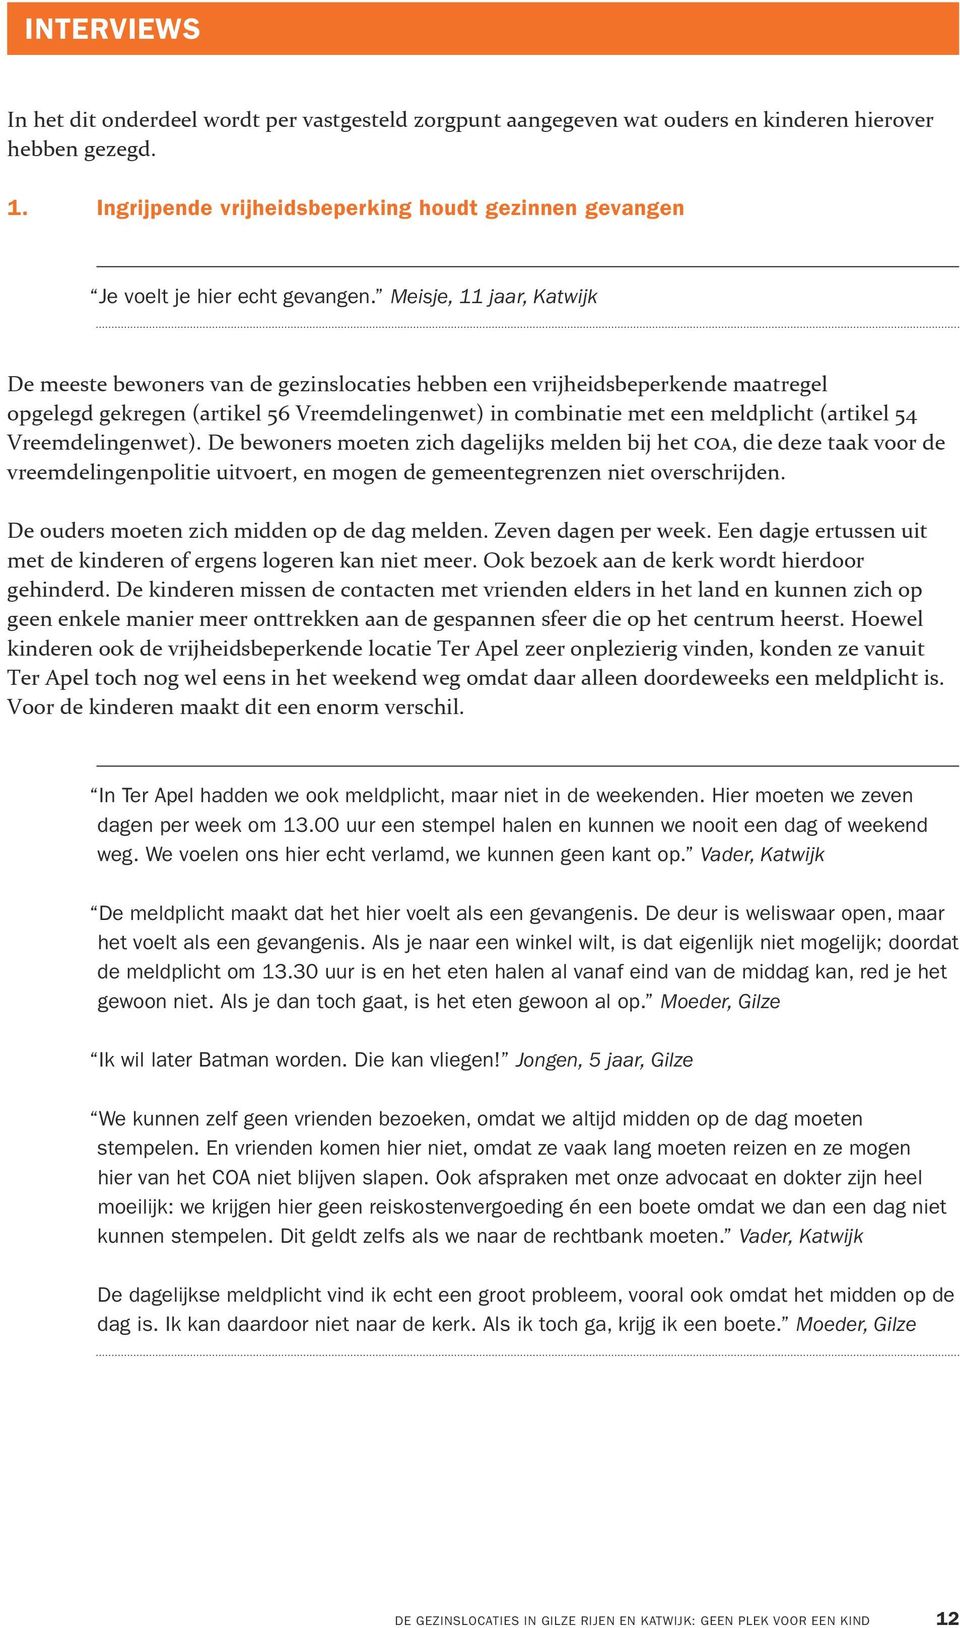 Meisje, 11 jaar, Katwijk De meeste bewoners van de gezinslocaties hebben een vrijheidsbeperkende maatregel opgelegd gekregen (artikel 56 Vreemdelingenwet) in combinatie met een meldplicht (artikel 54